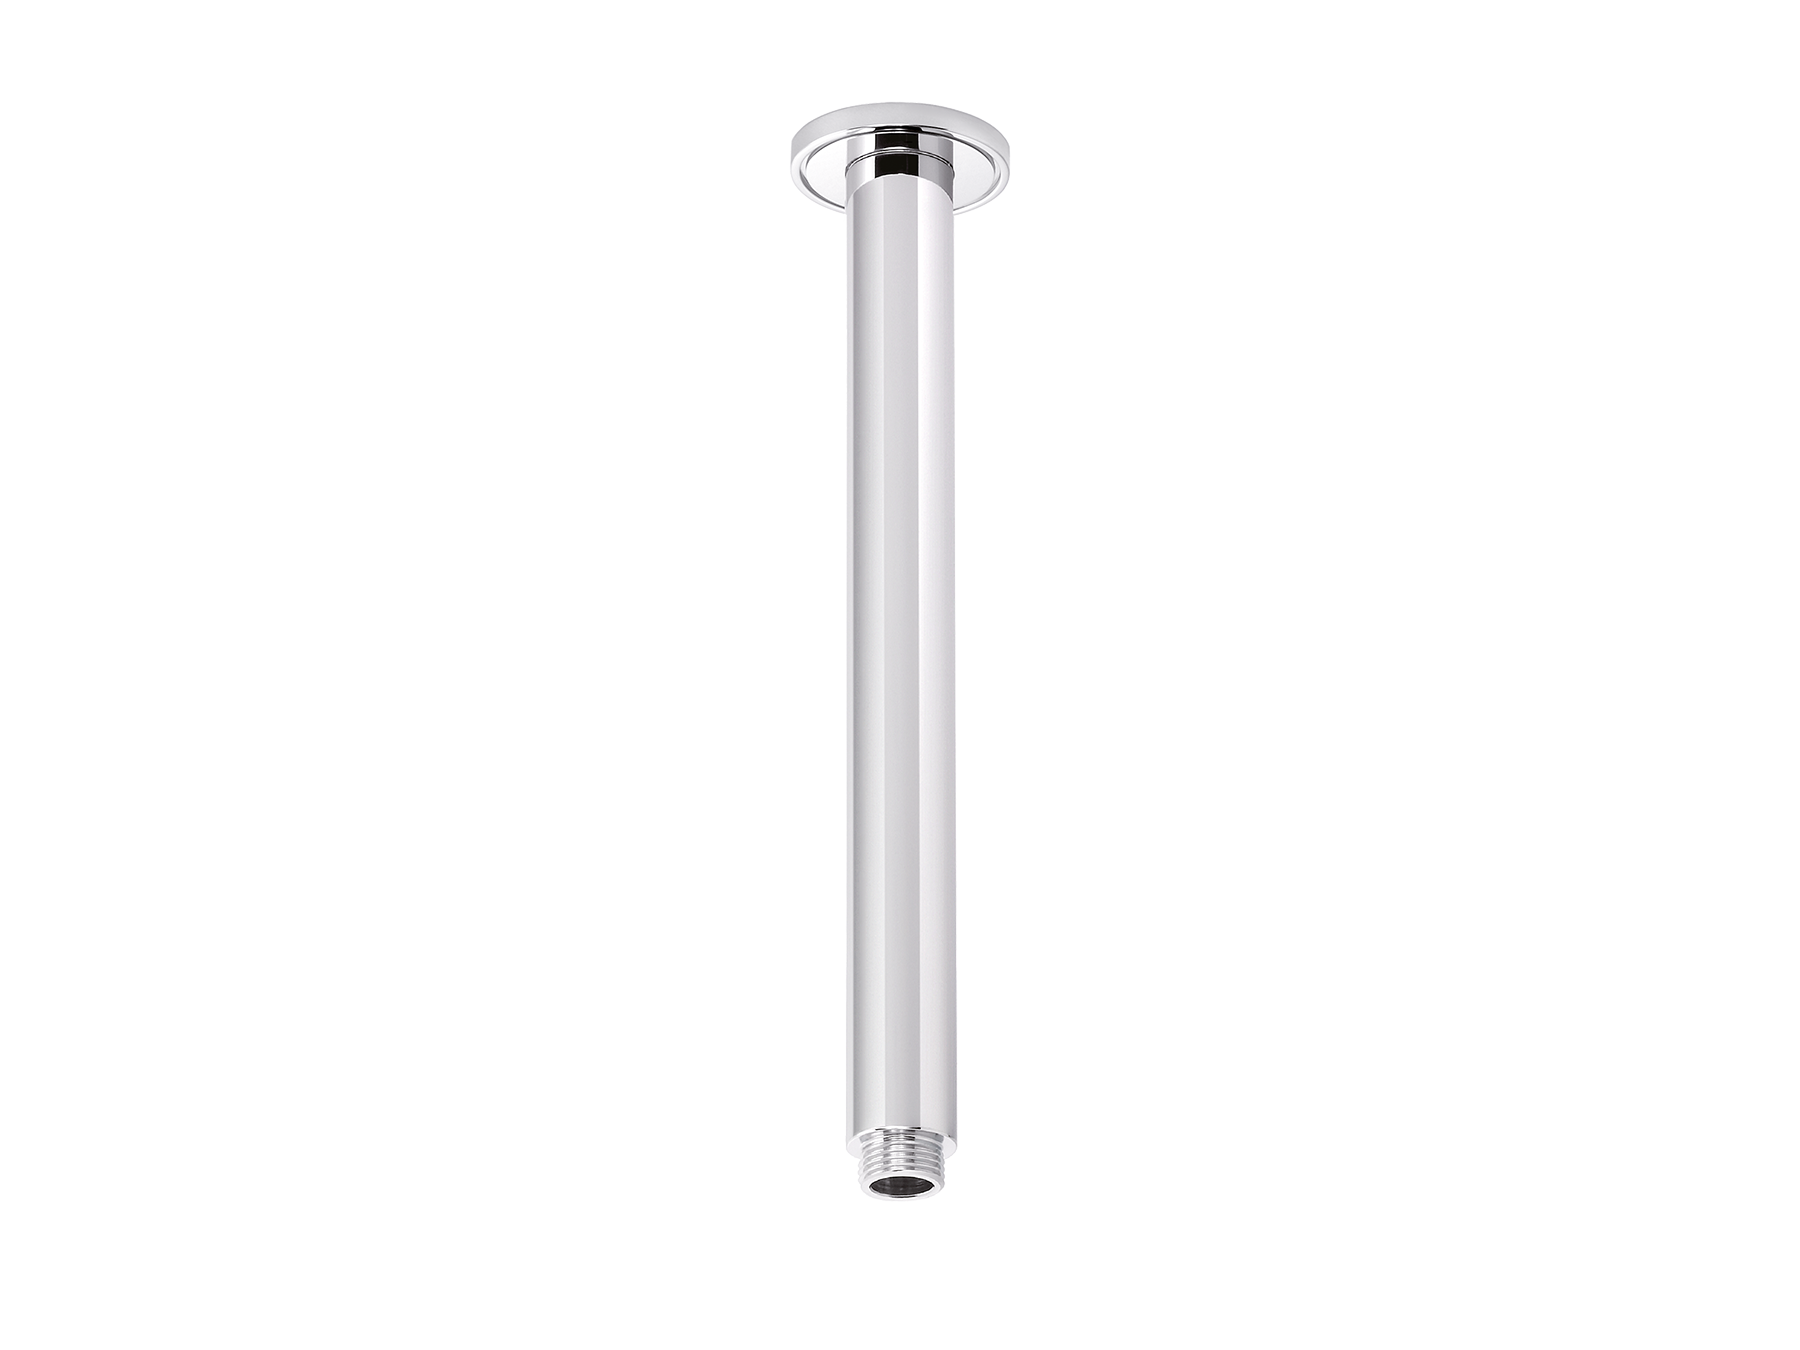 Shower arm “Retro” – 350mm